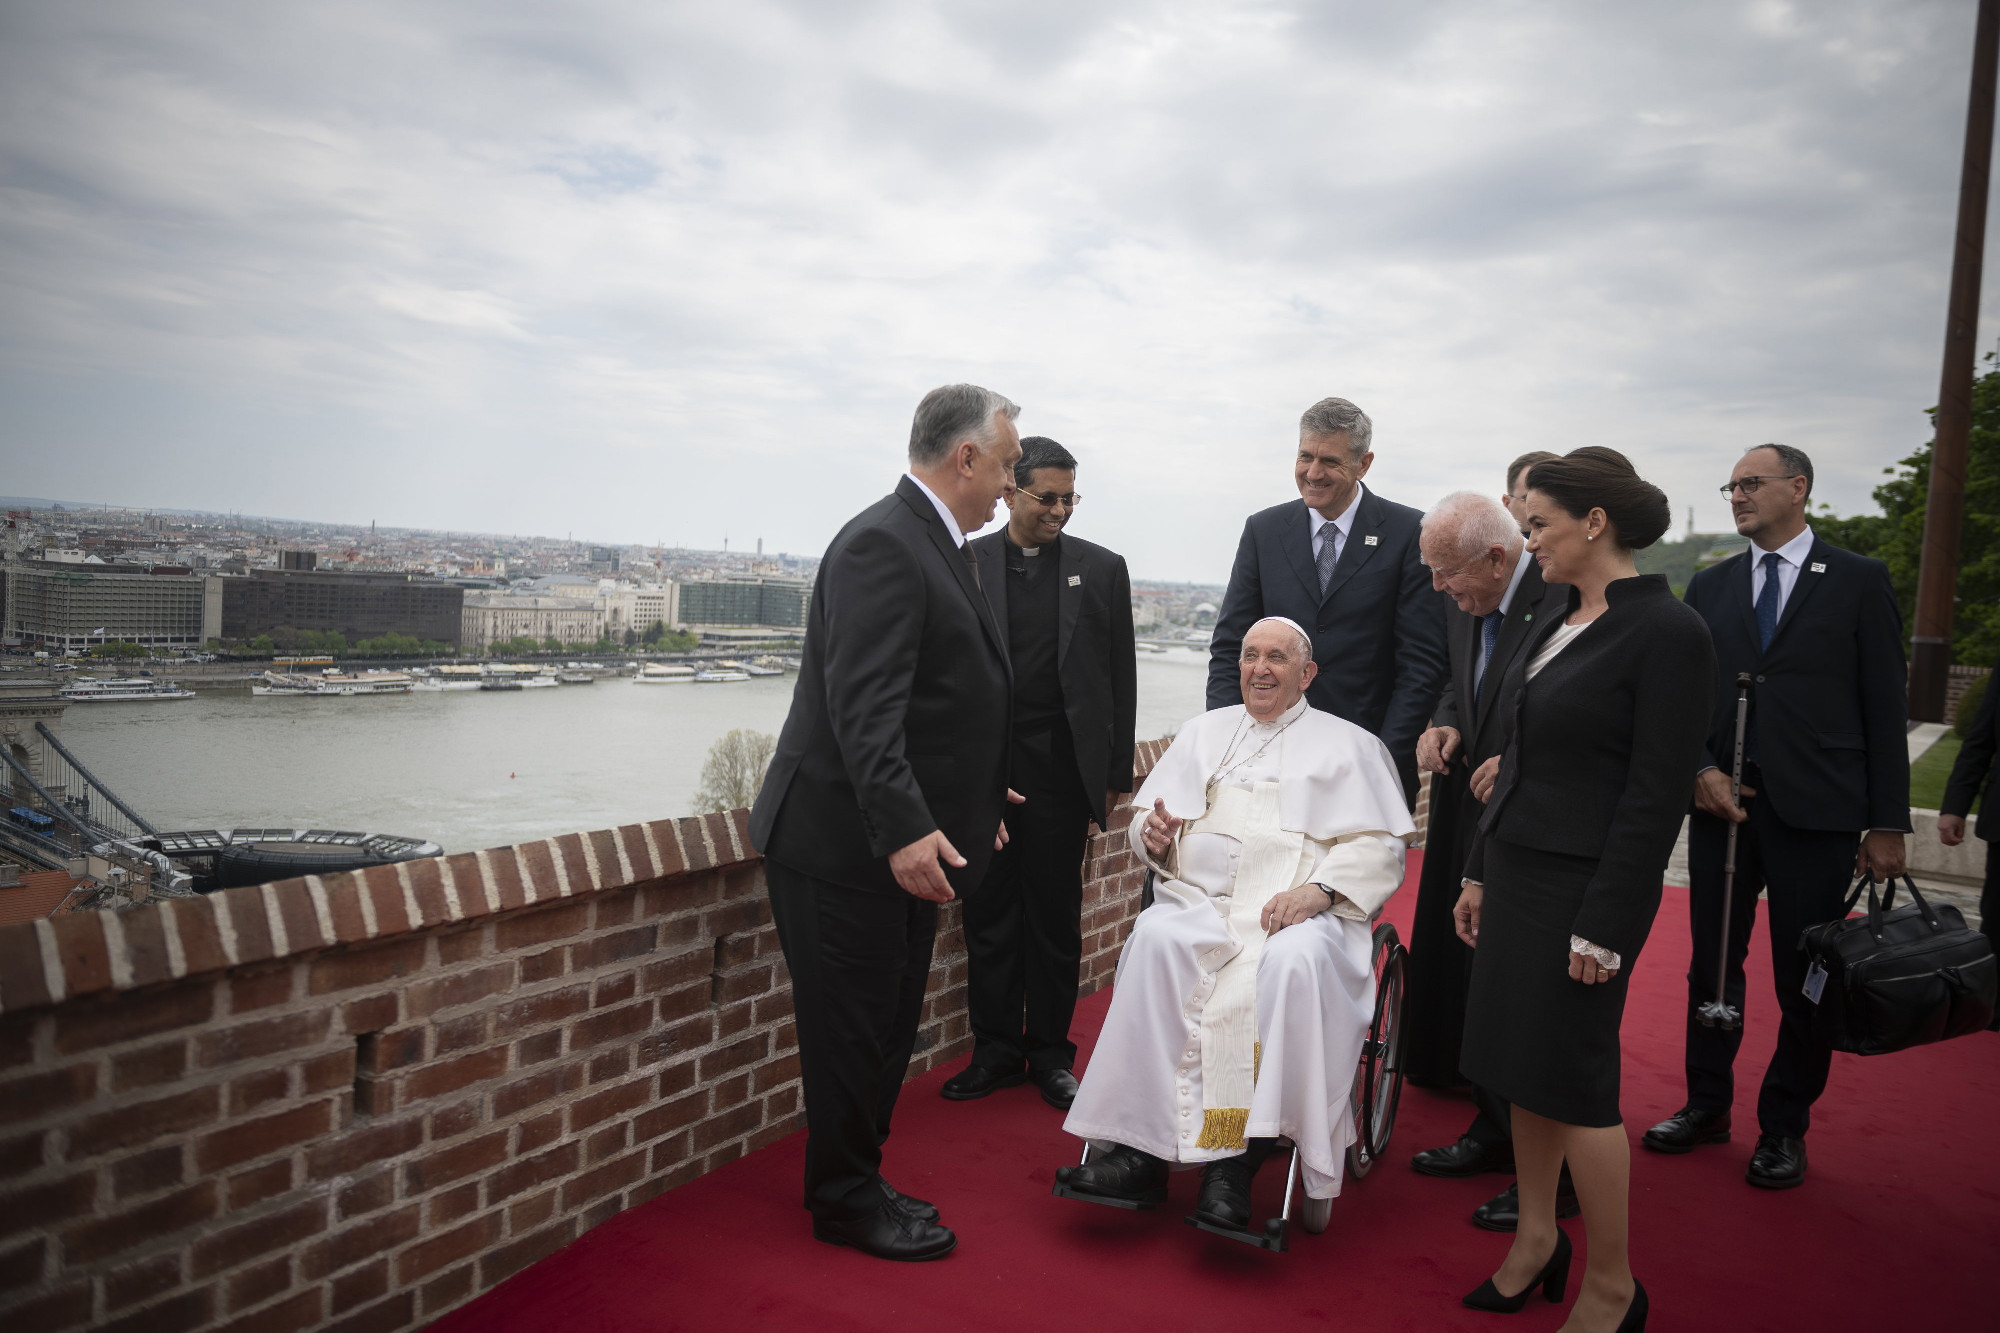 Politikai menlevelet biztosít a pápalátogatás az Orbán-kormánynak?